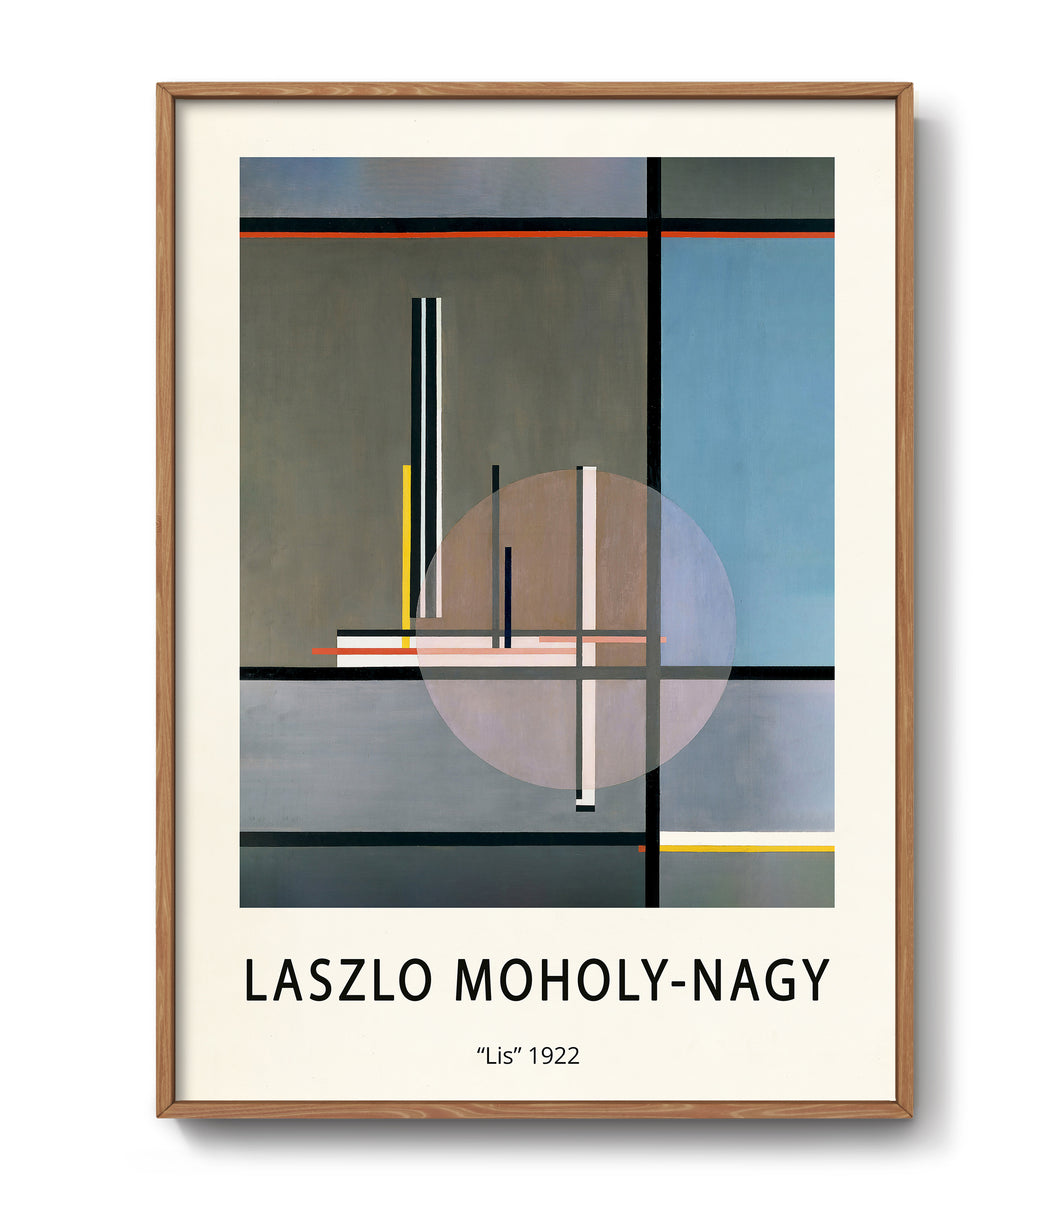 Lis by László Moholy-Nagy